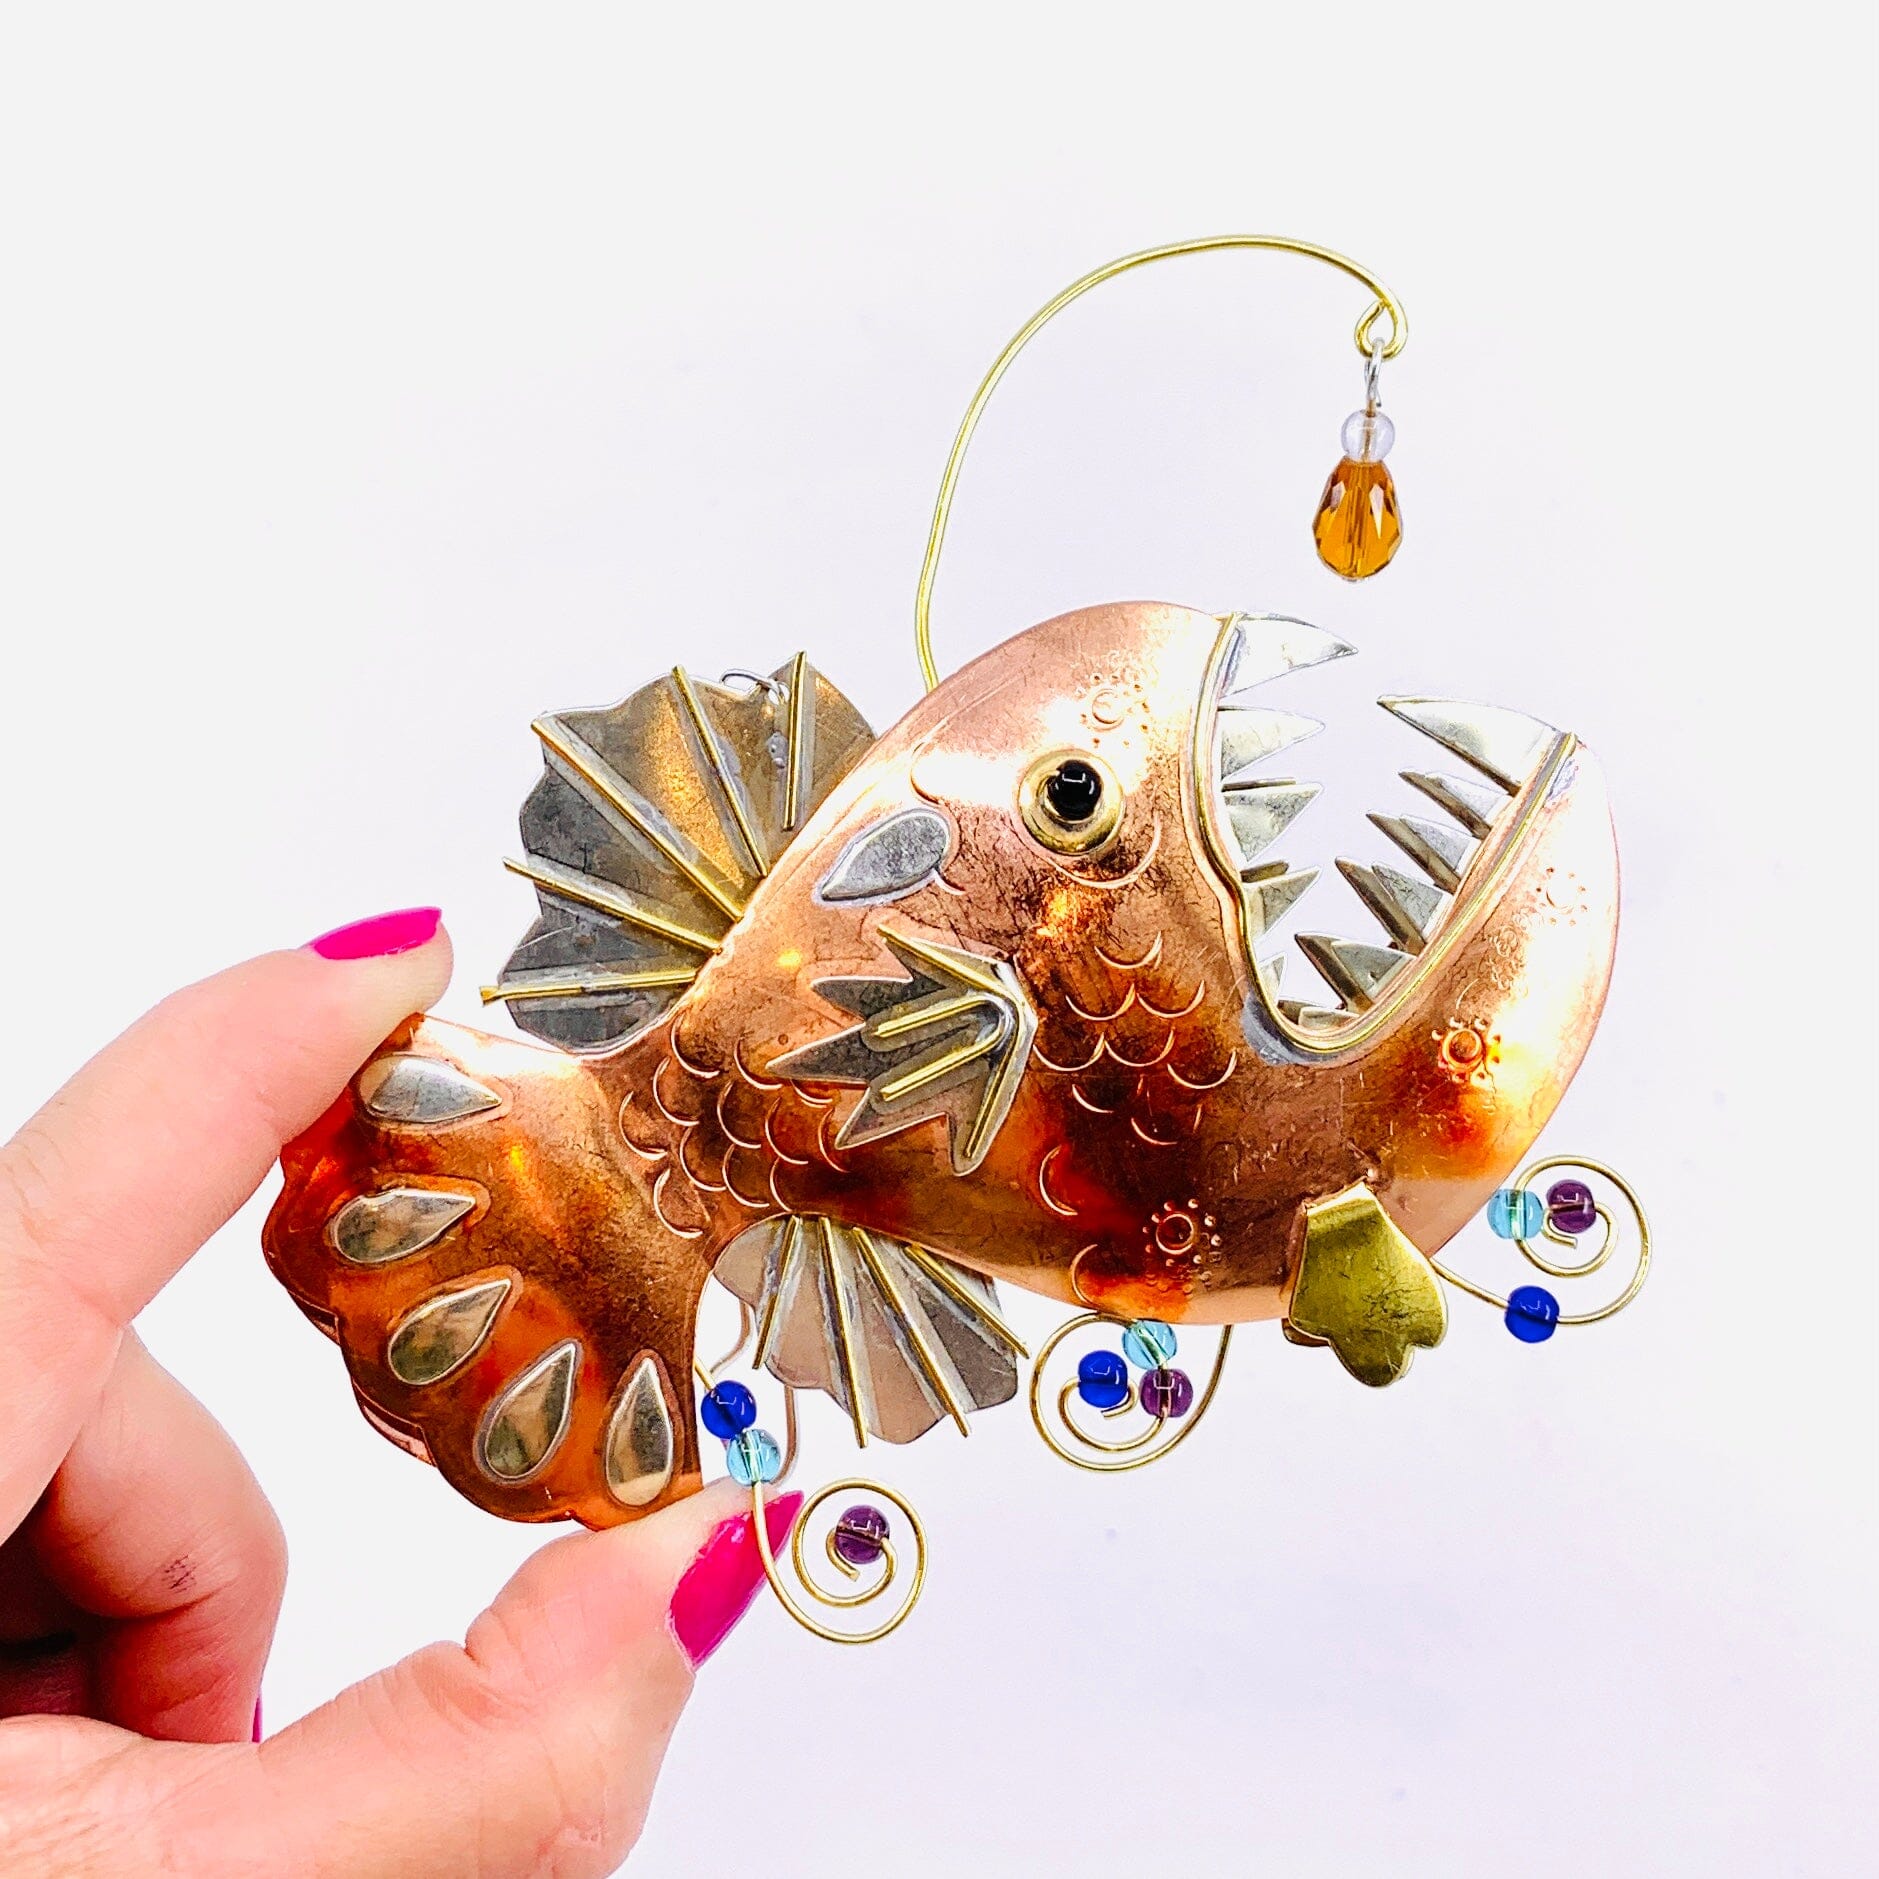 Mixed Metal Ornament, Angler Fish 9 Ornament Pilgrim Imports 